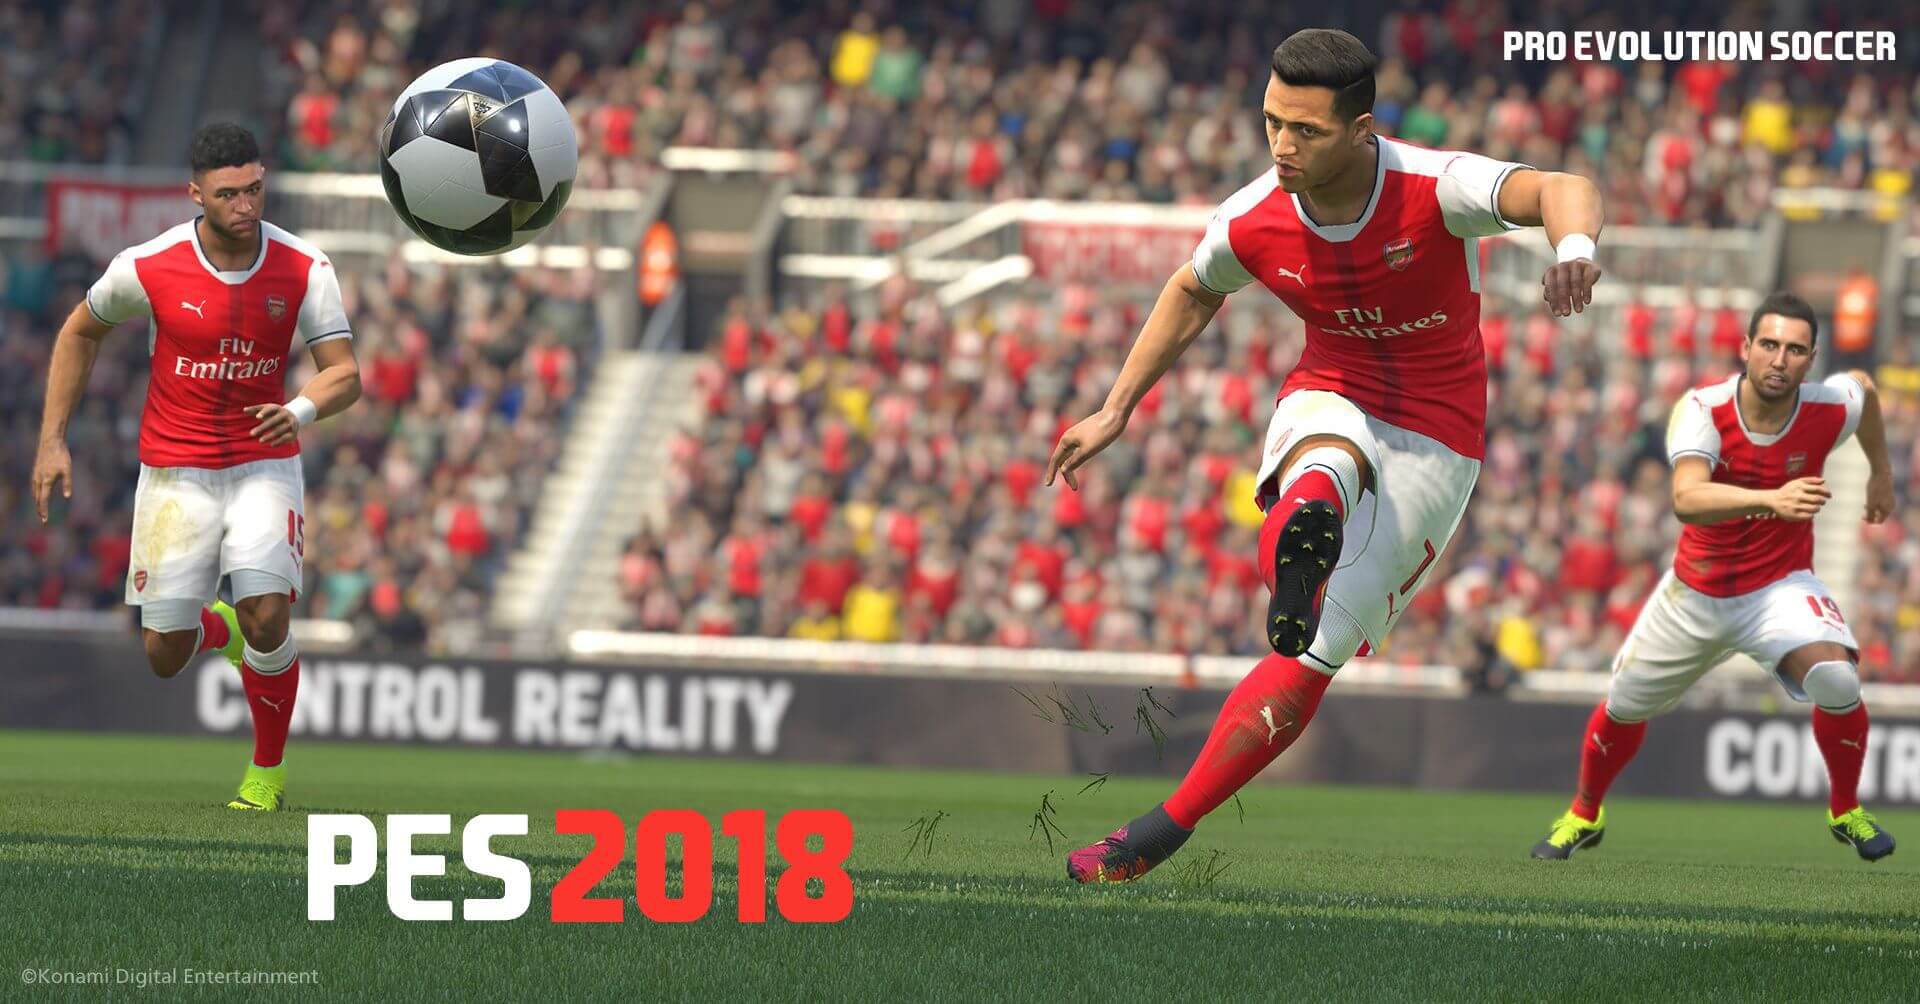 PES 2018 Full PC Game Evolution Soccer 2018 Crack